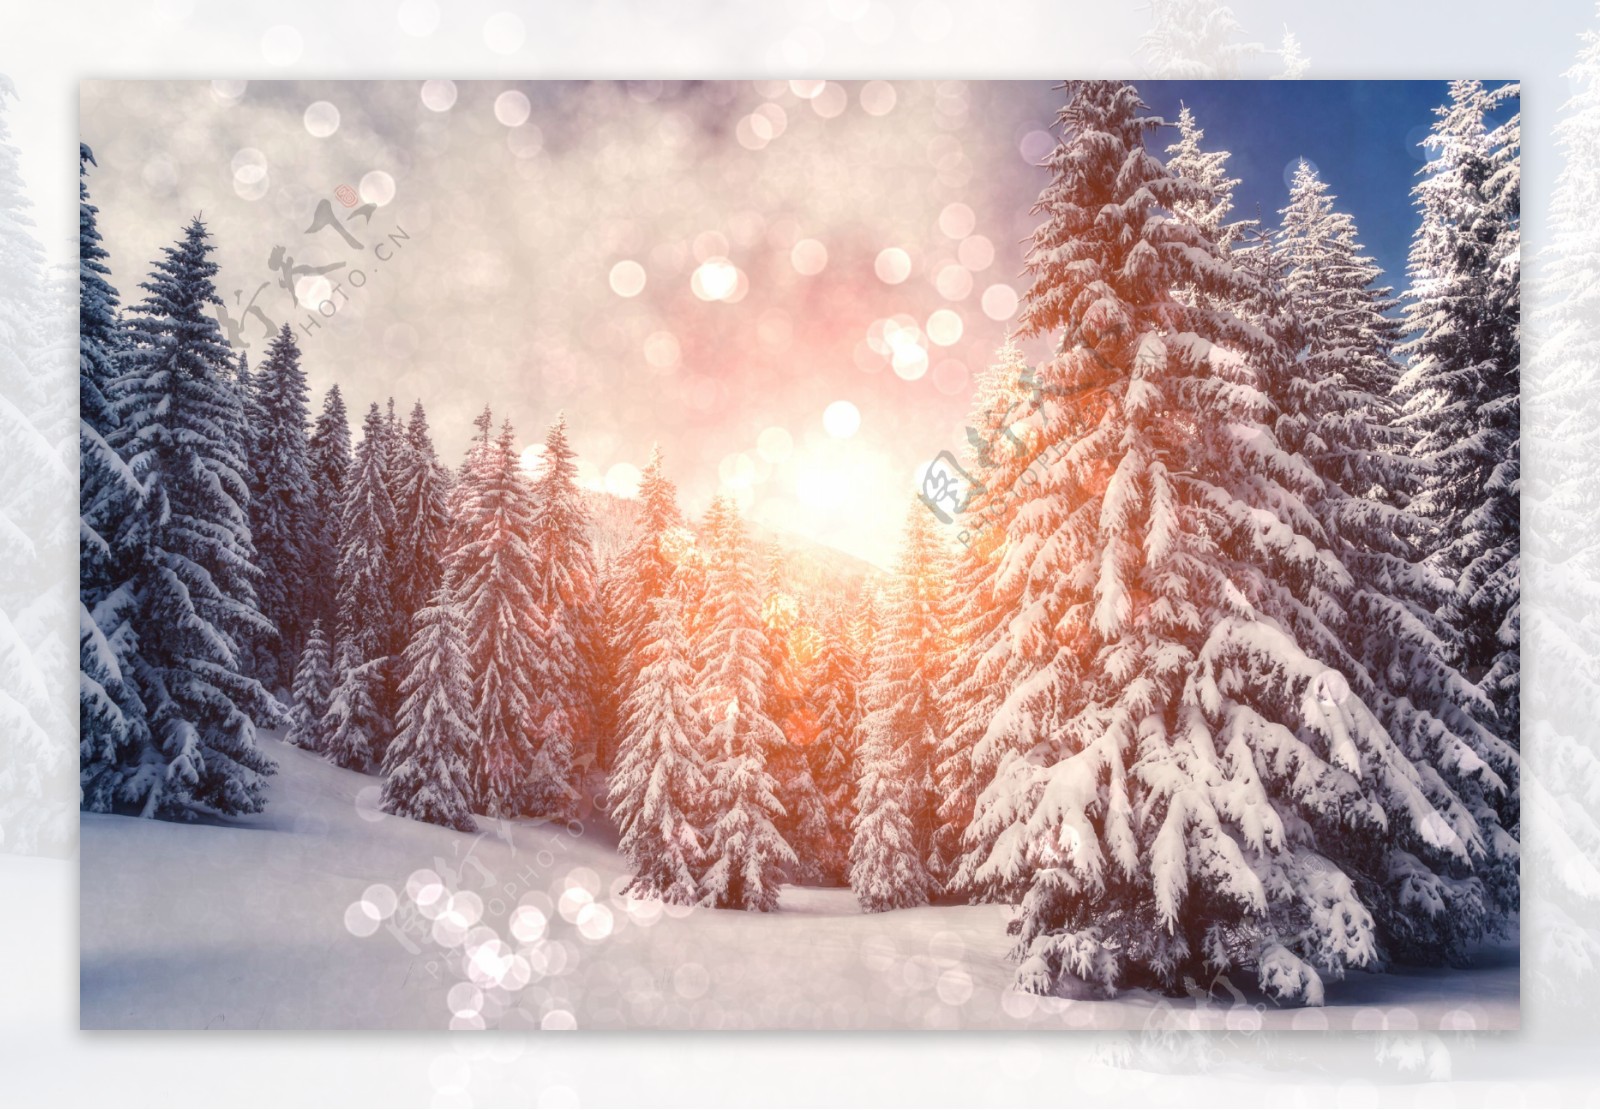 冬季里的松树雪景图片